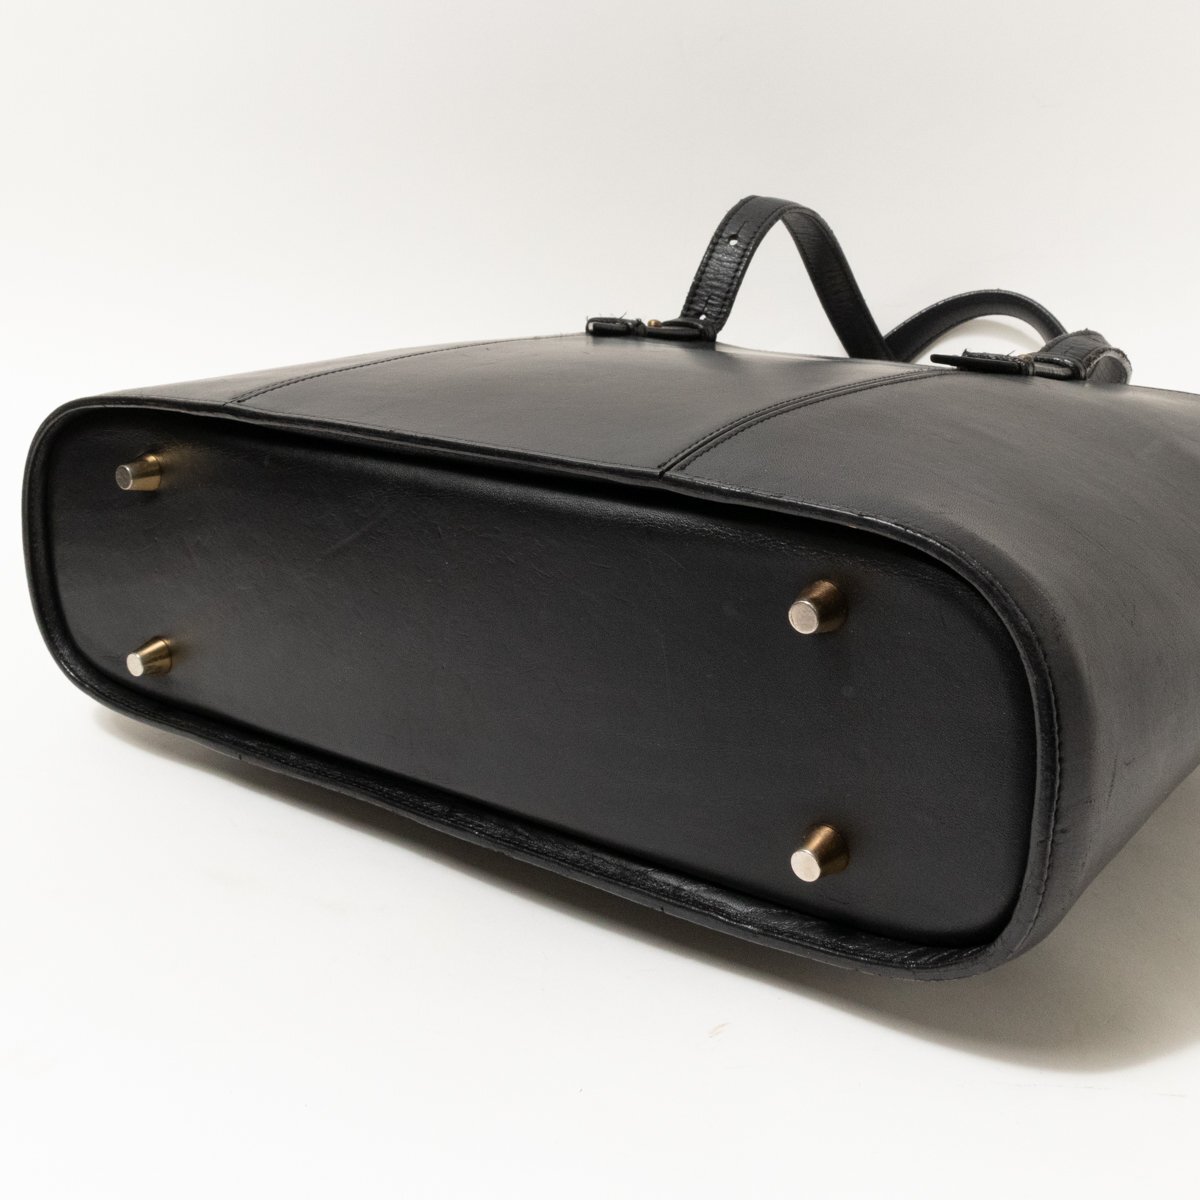 [1 иен старт ]SOMESso женский кожаная сумка большая сумка плечо .. портфель черный чёрный одноцветный кожа застежка-молния открытие и закрытие A4 место хранения возможность 